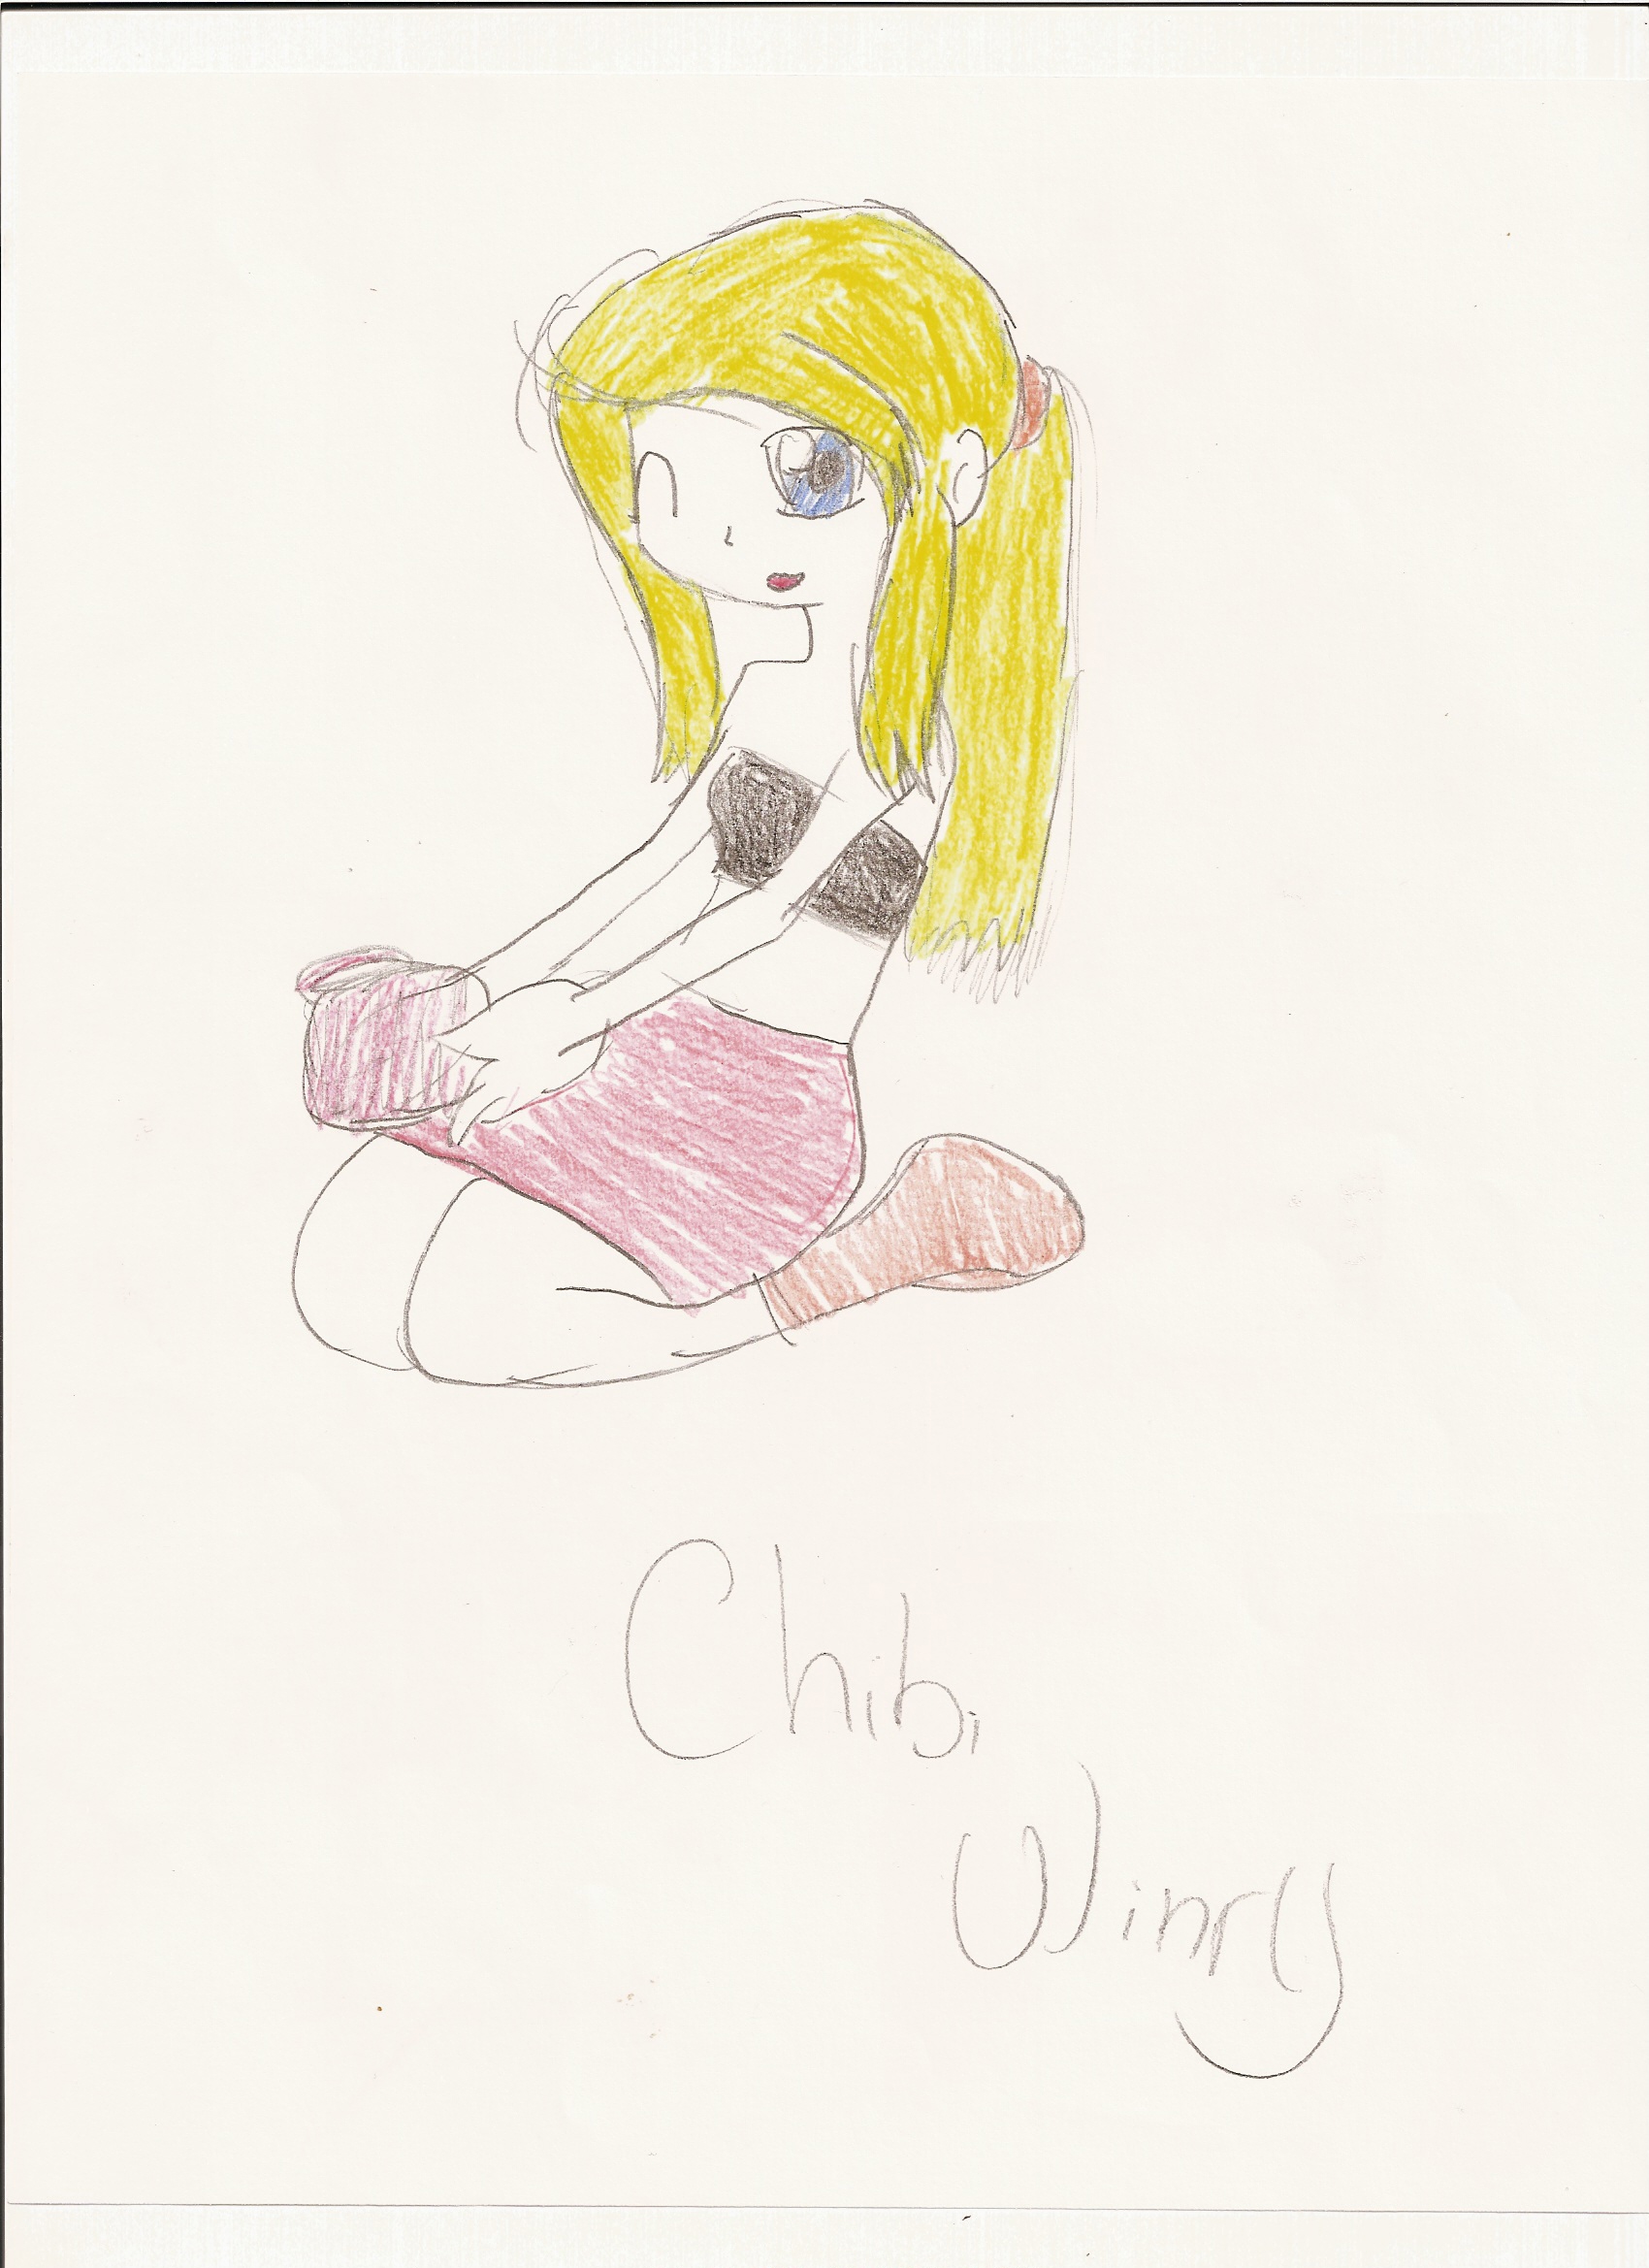 chibi winry by Kimikoprincesspancho